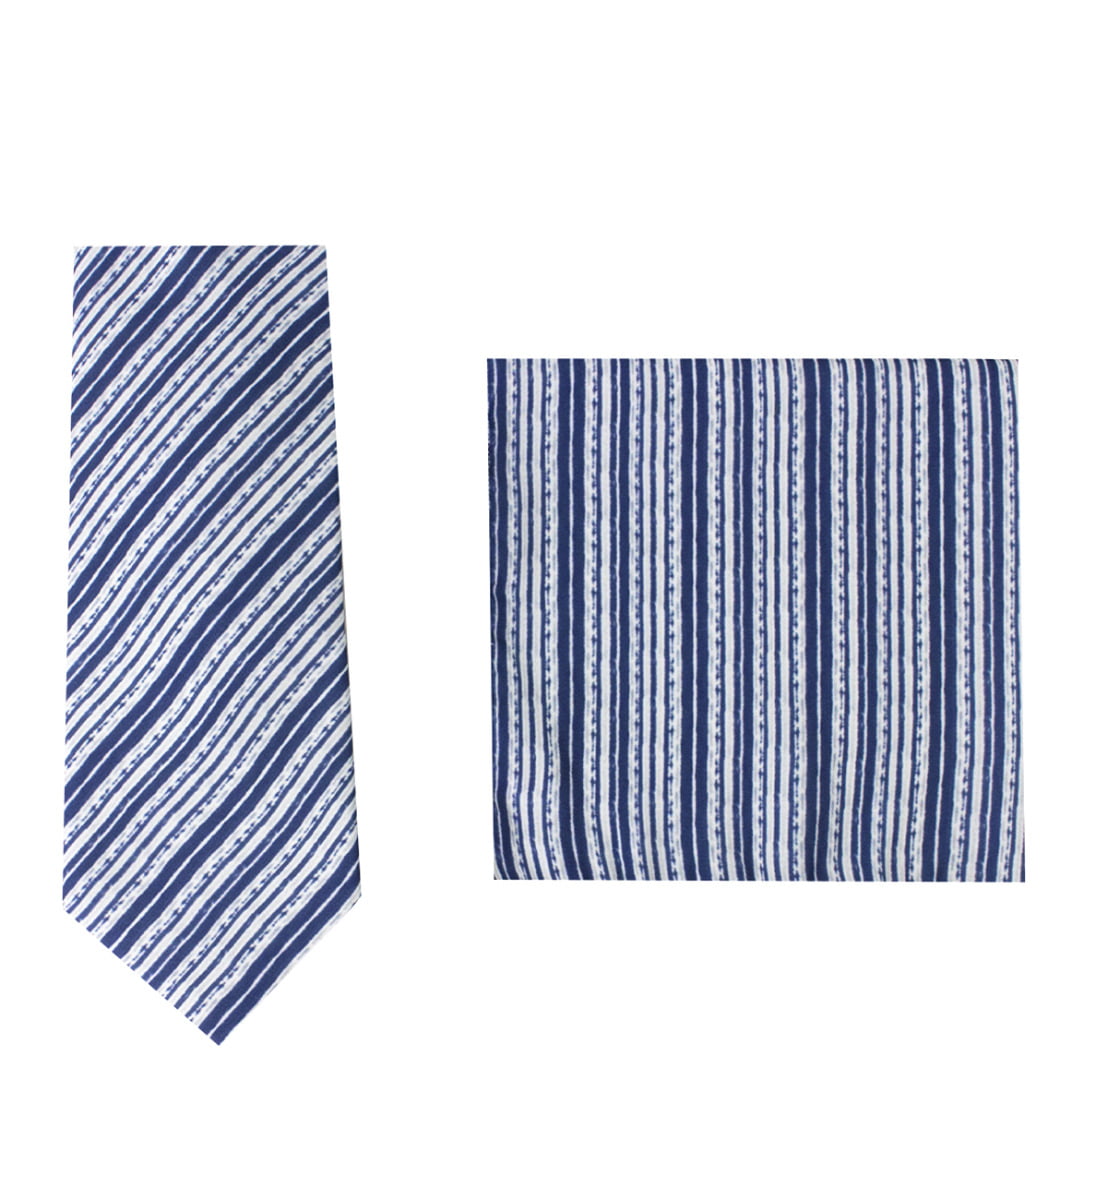 Cravatta uomo blu fantasia righe diagonali bianche compresa di pochette abbinata